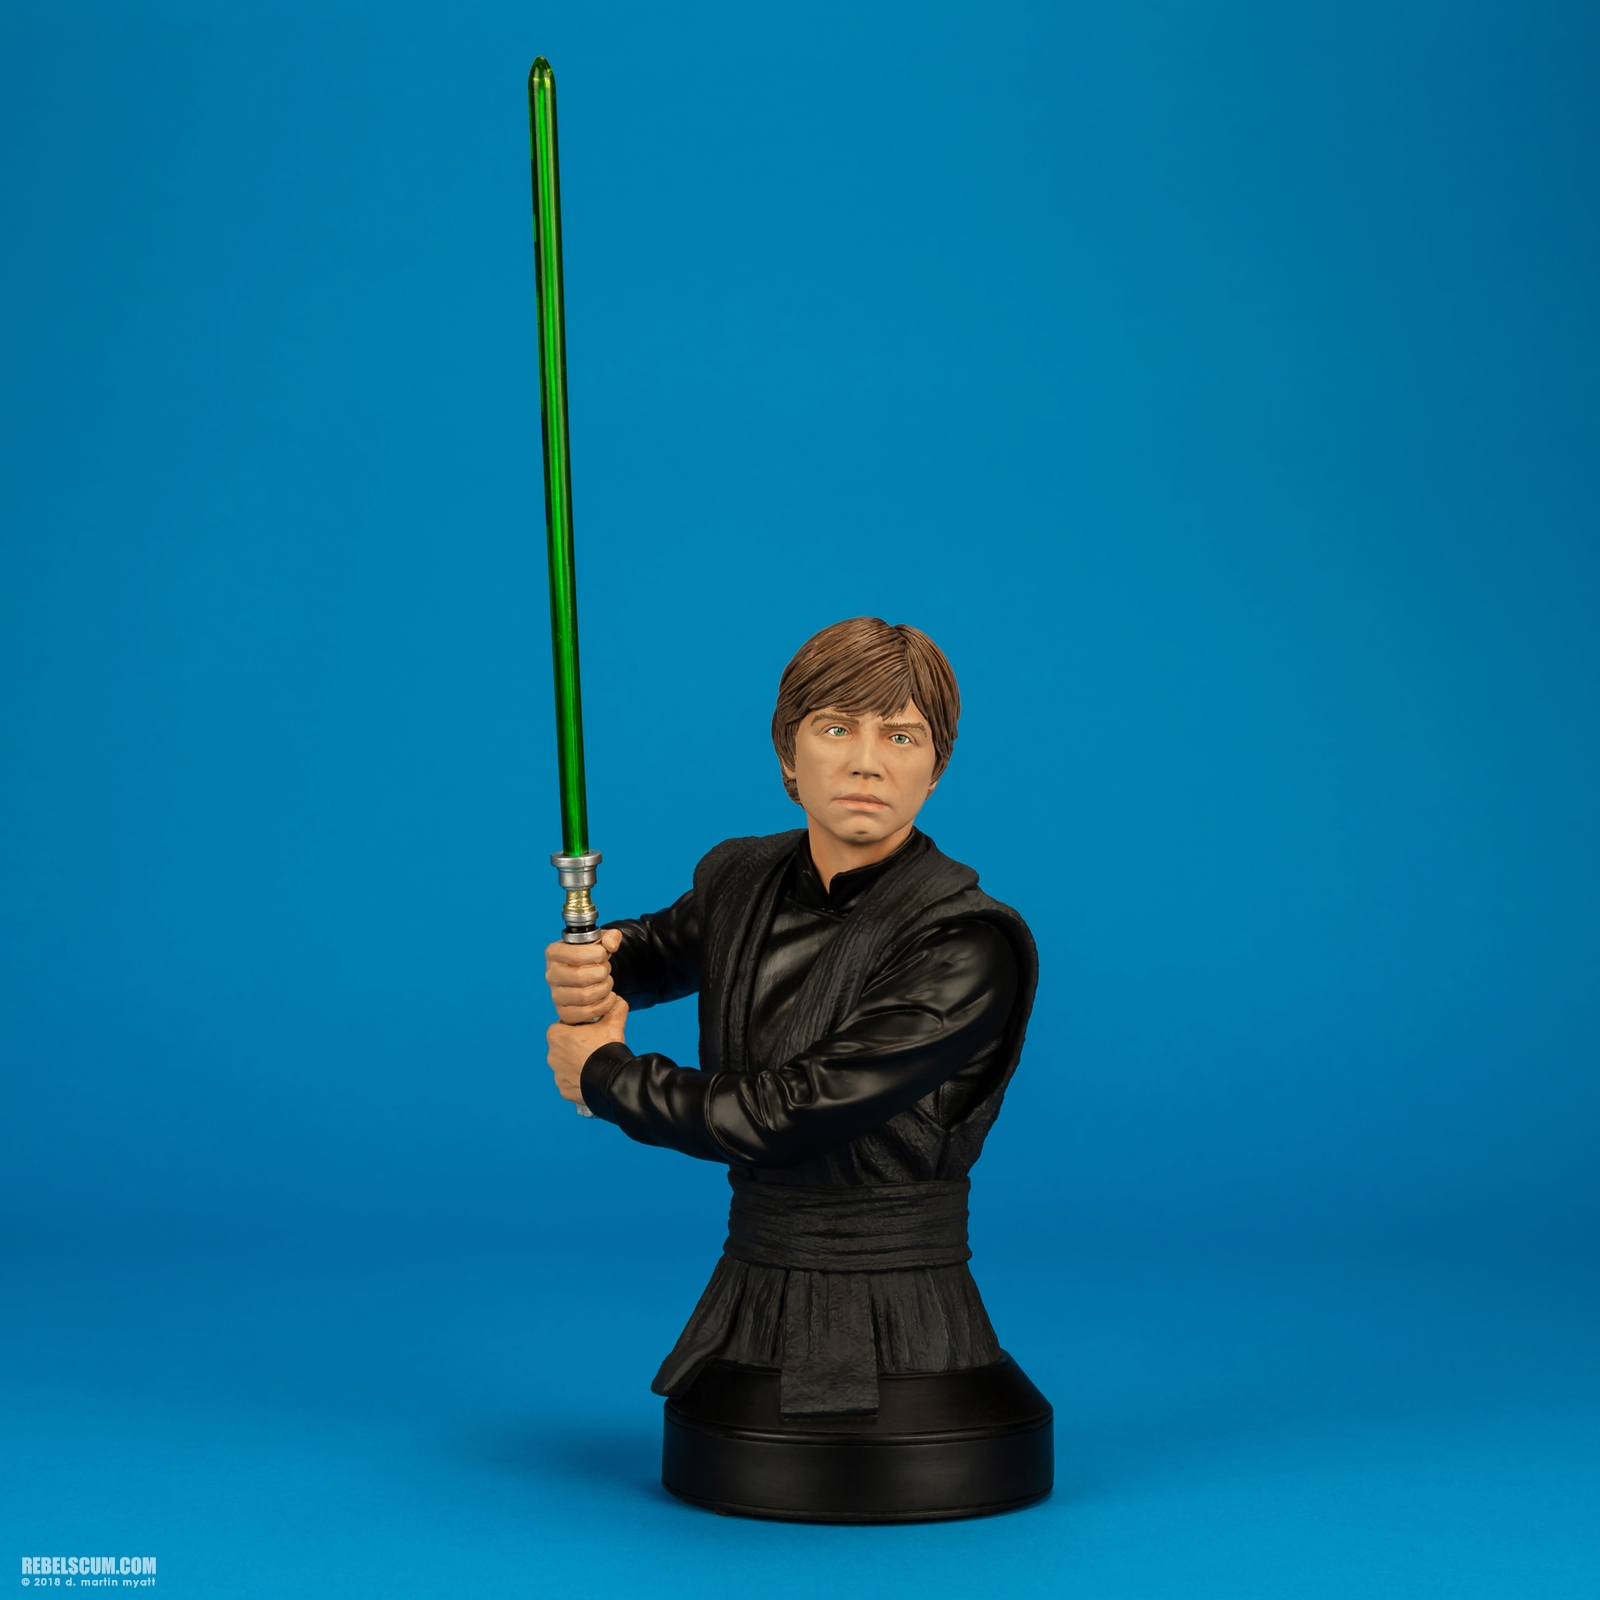 Luke-Skywalker-Jedi-Knight-Mini-Bust-Gentle-Giant-001.jpg